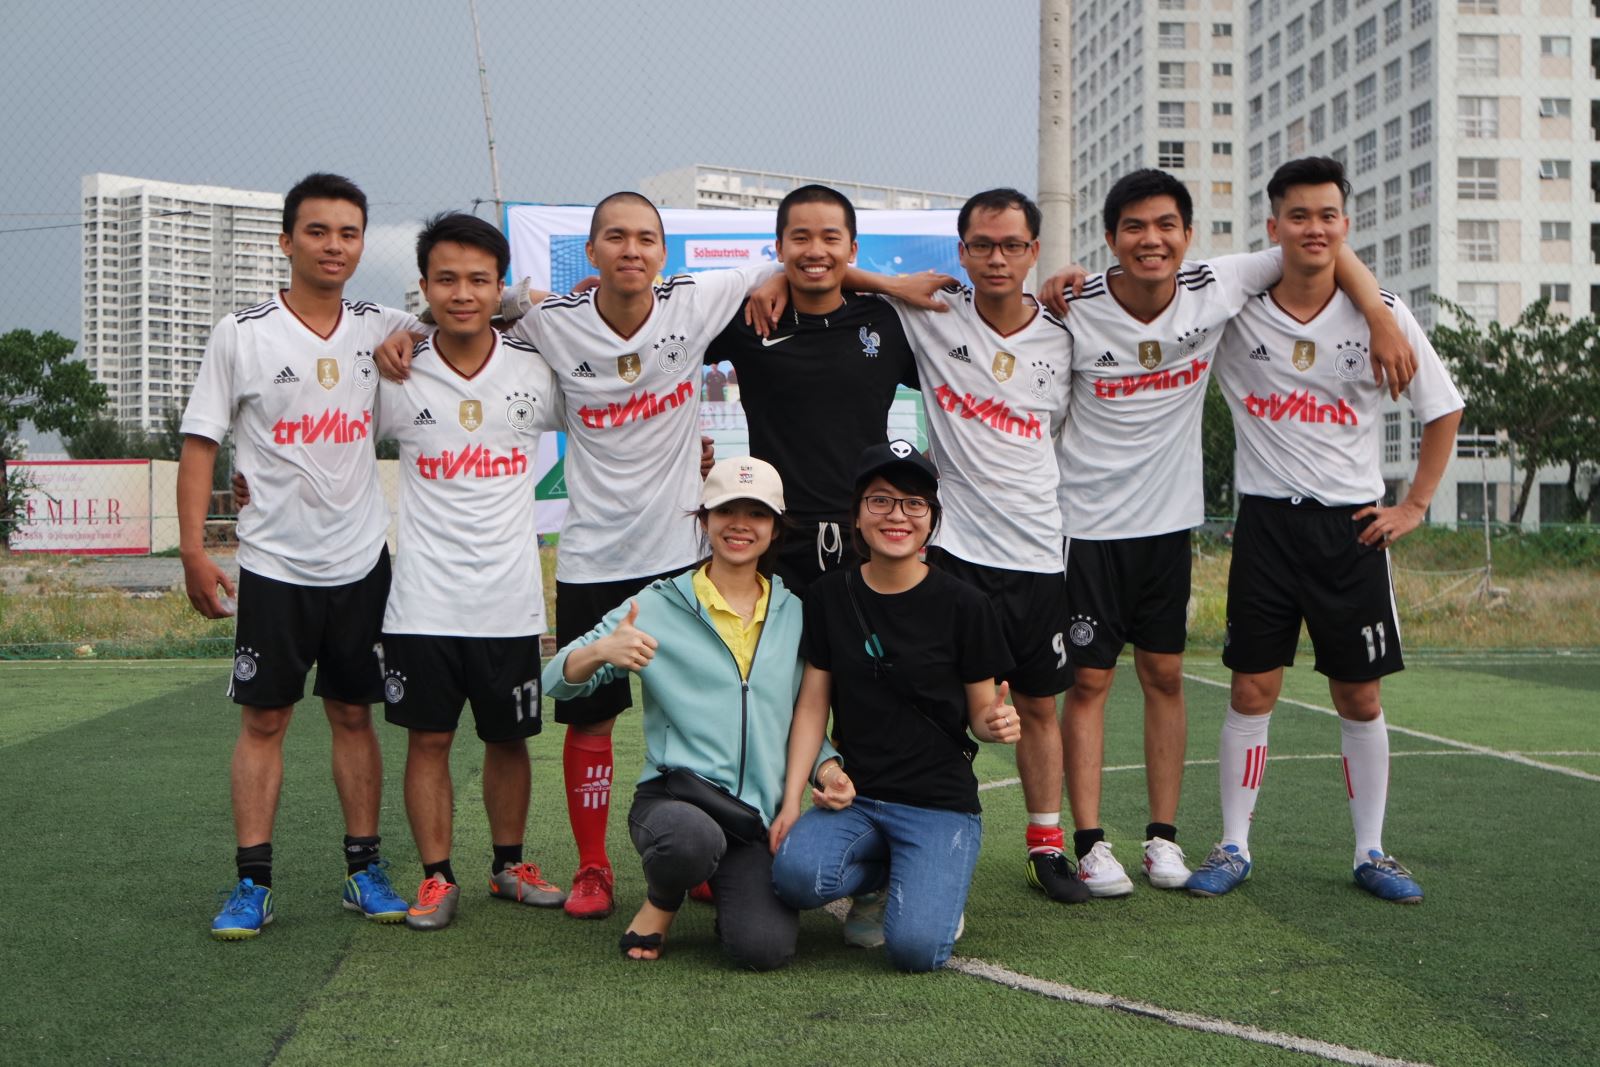 Luật Trí Minh tham gia giải bóng đá khối sở hữu trí tuệ tại TpHCM